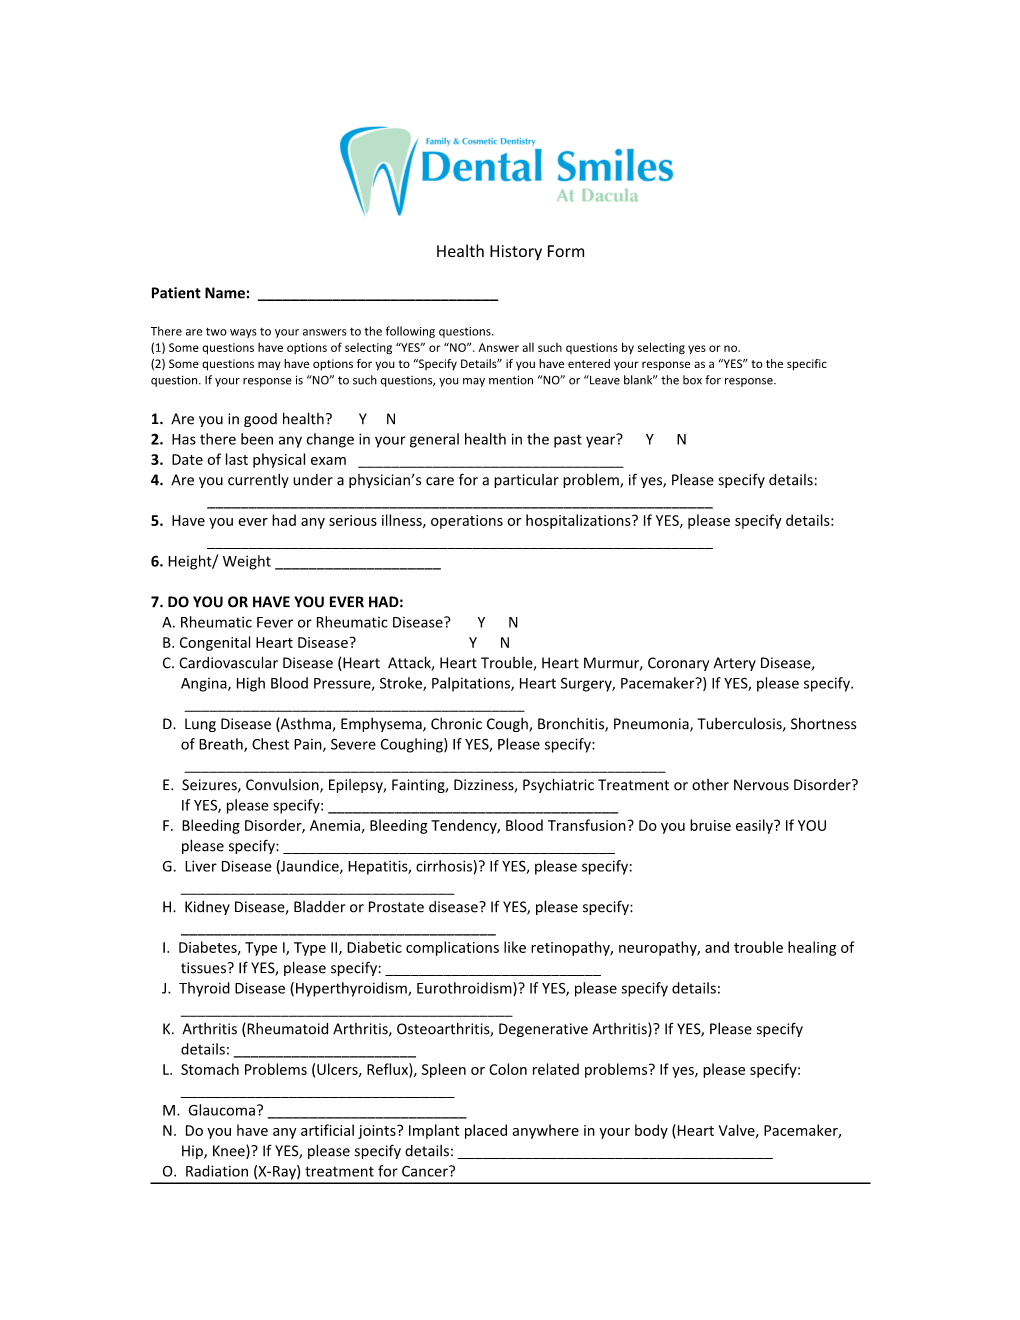 Dental Smiles at Suwanee